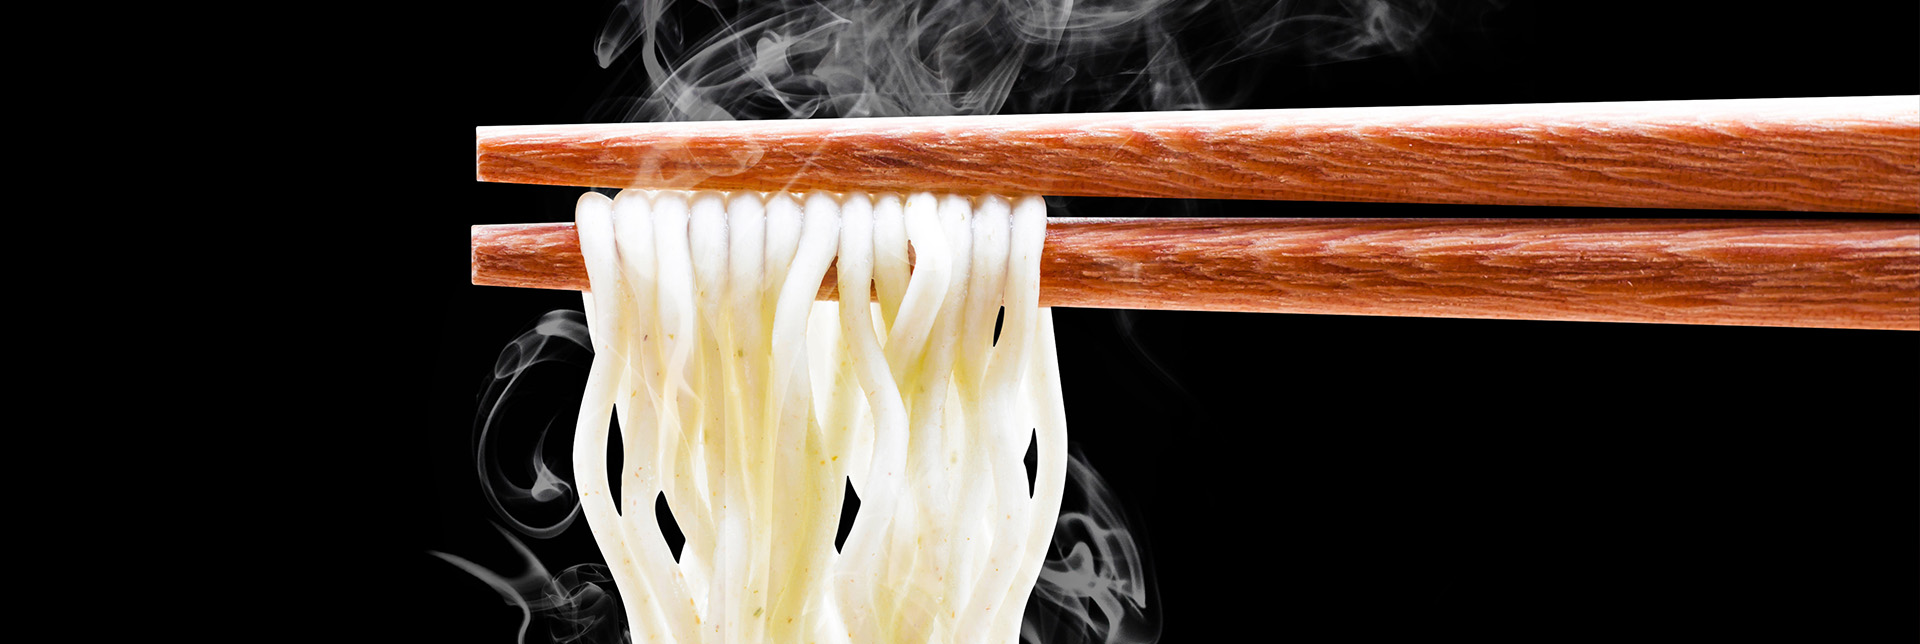 header-banner-instant-noodles.jpg